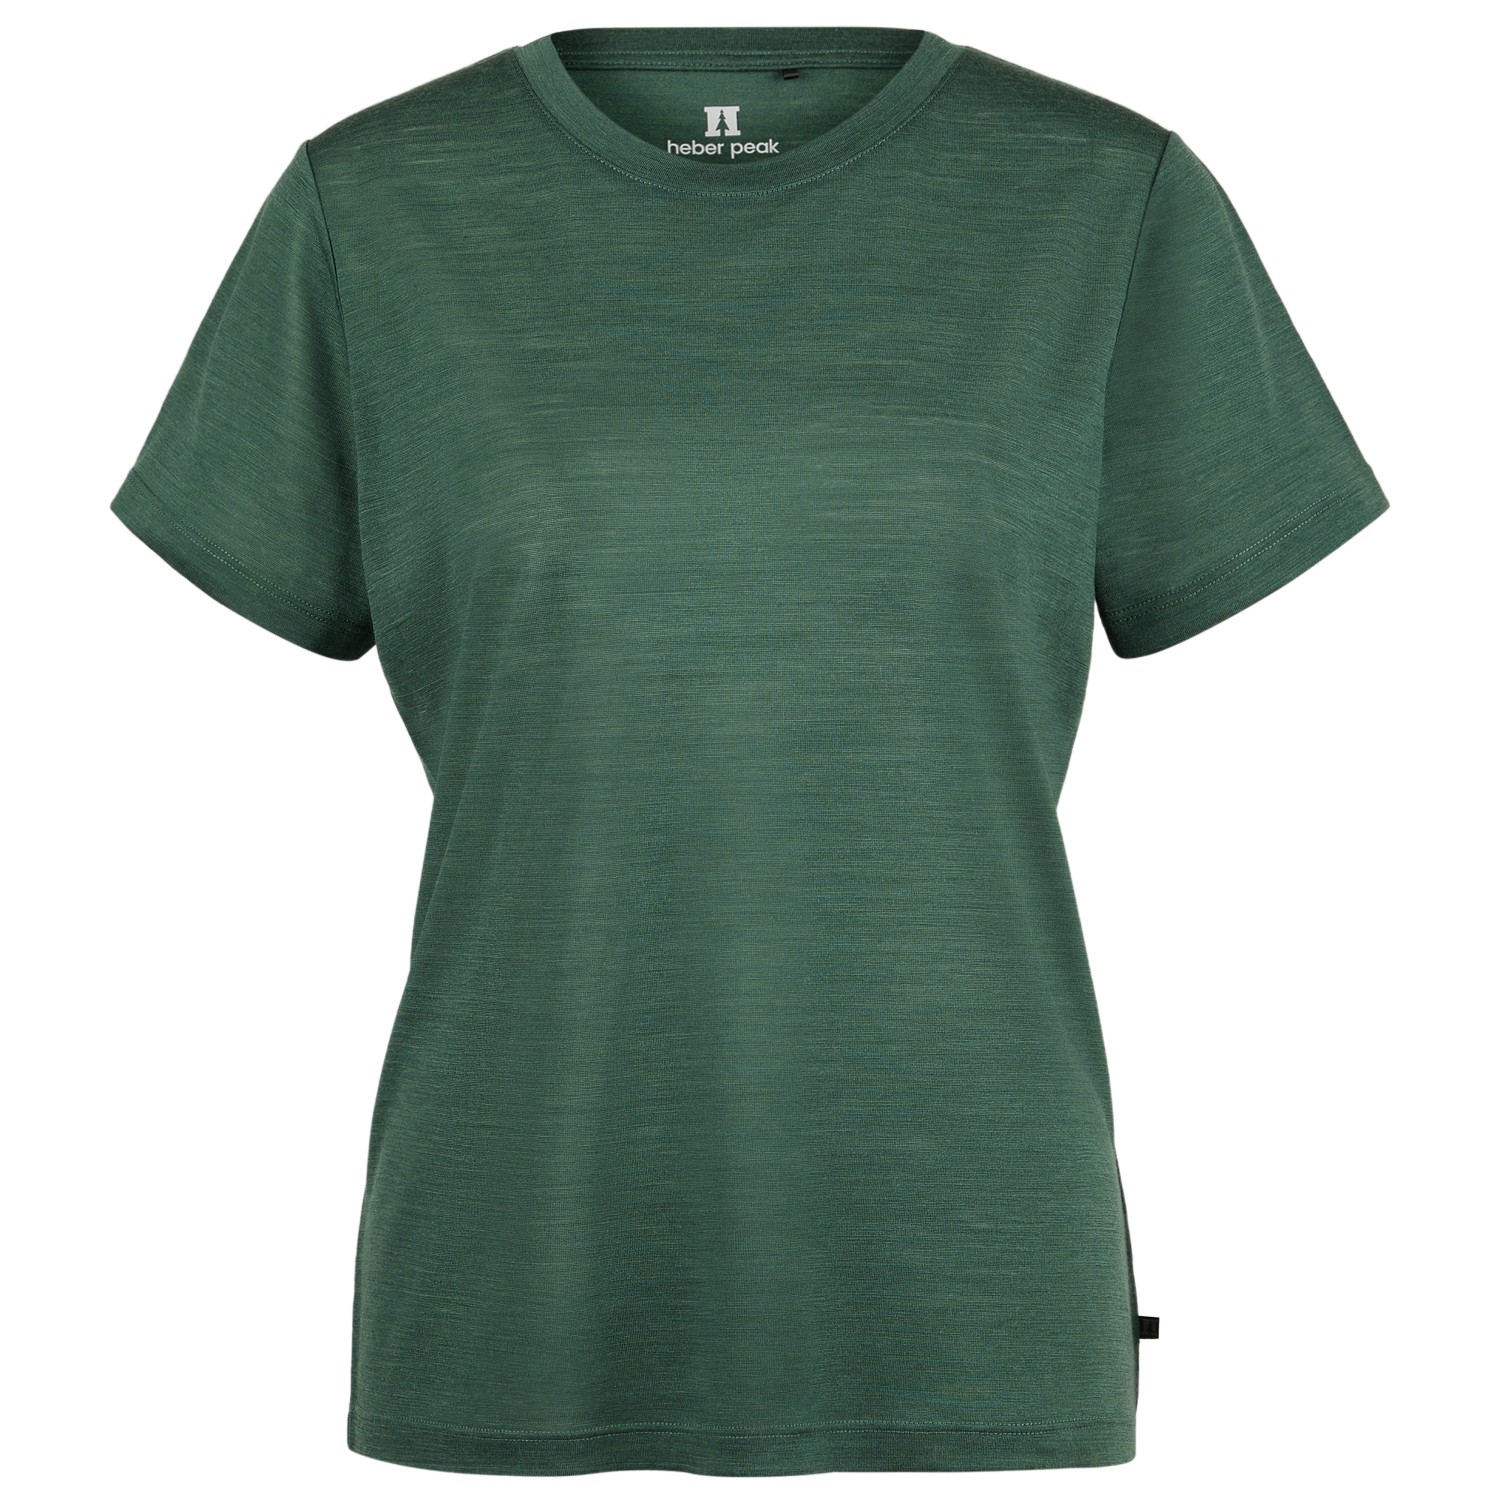 Рубашка из мериноса Heber Peak Women's MerinoMix150 PineconeHe T Shirt, цвет Parsley Green